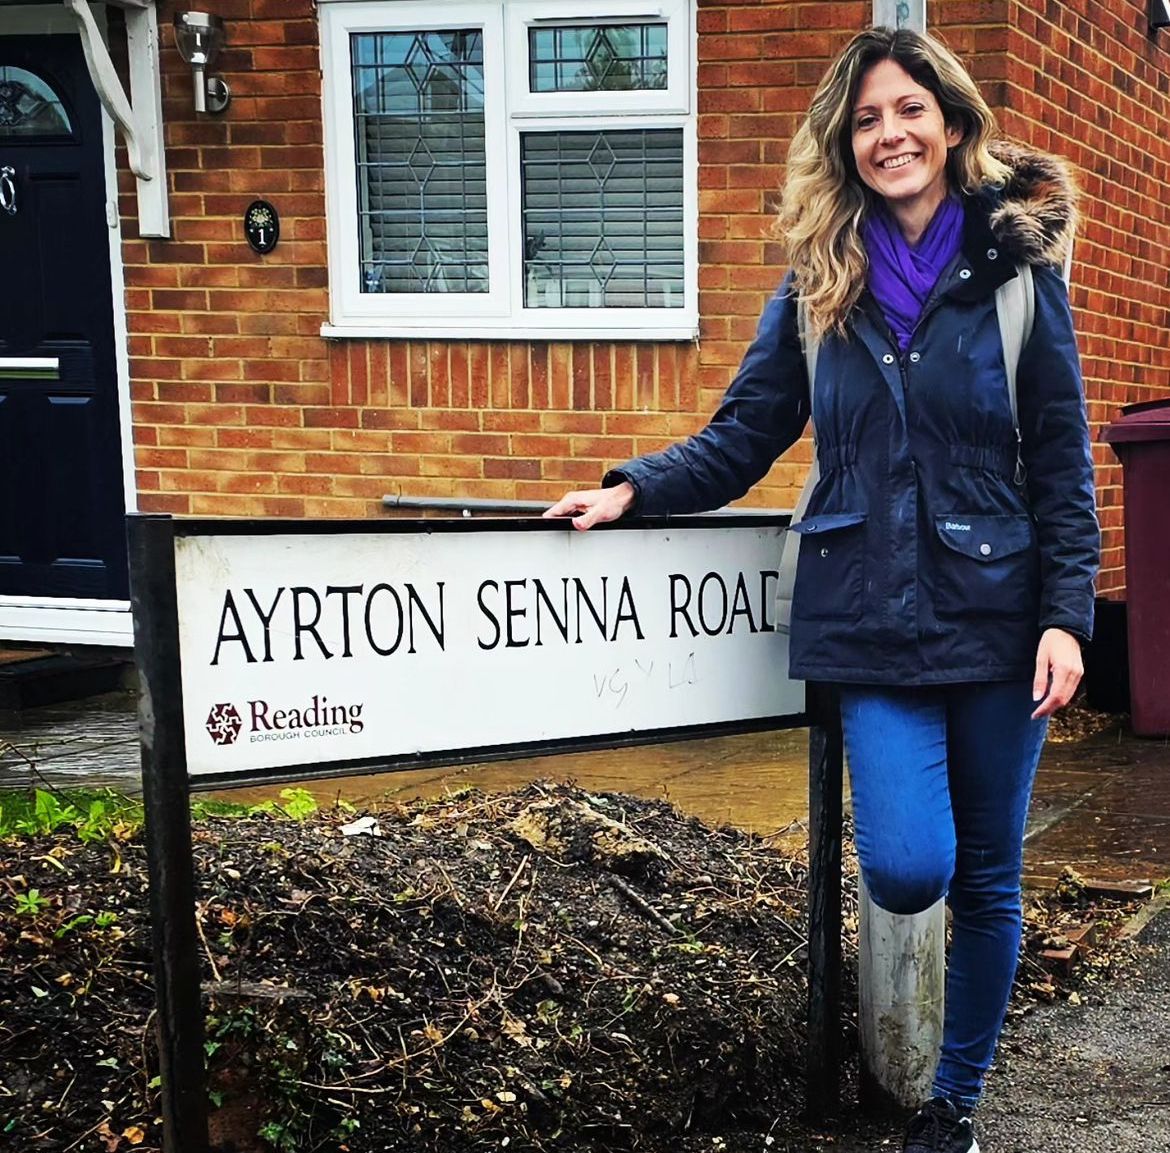 Julianne Cerasoli na frente da placa Ayrton Senna Road, na cidade inglesa de Reading. – Foto: Reprodução/Instagram @myf1life 